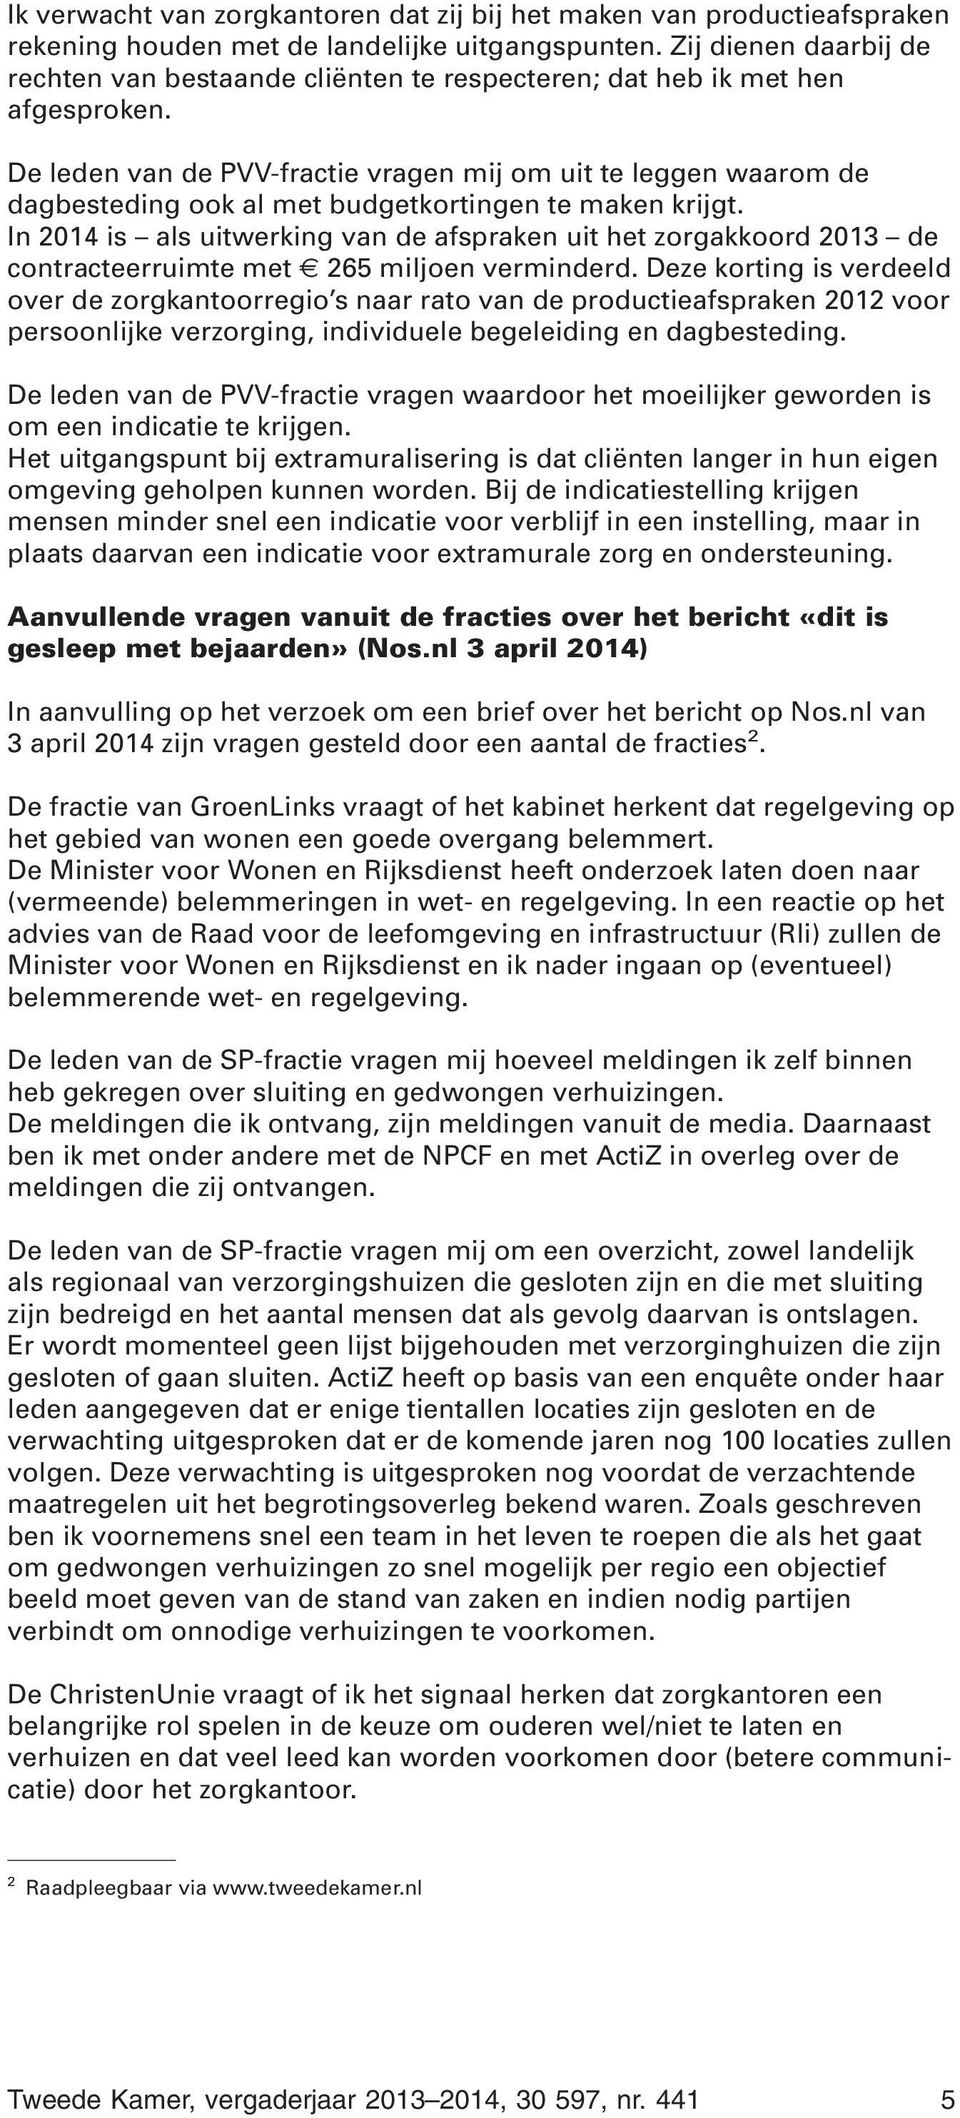 De leden van de PVV-fractie vragen mij om uit te leggen waarom de dagbesteding ook al met budgetkortingen te maken krijgt.